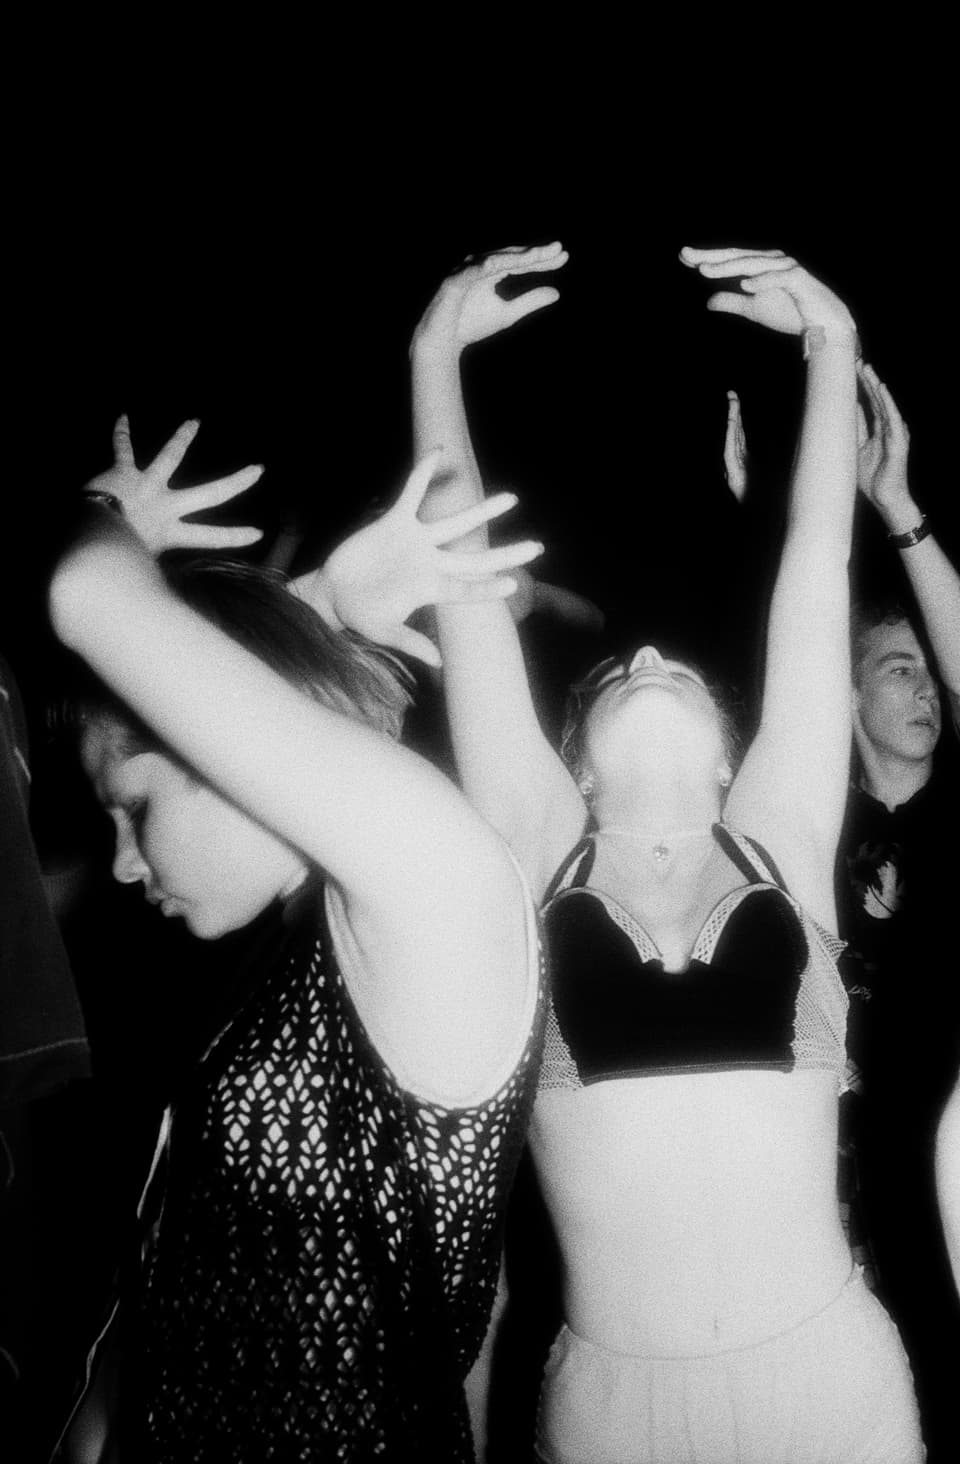 Man sieht mehrere junge Menschen beim Tanzen an einem Rave. Sie heben die Hände in die Luft.